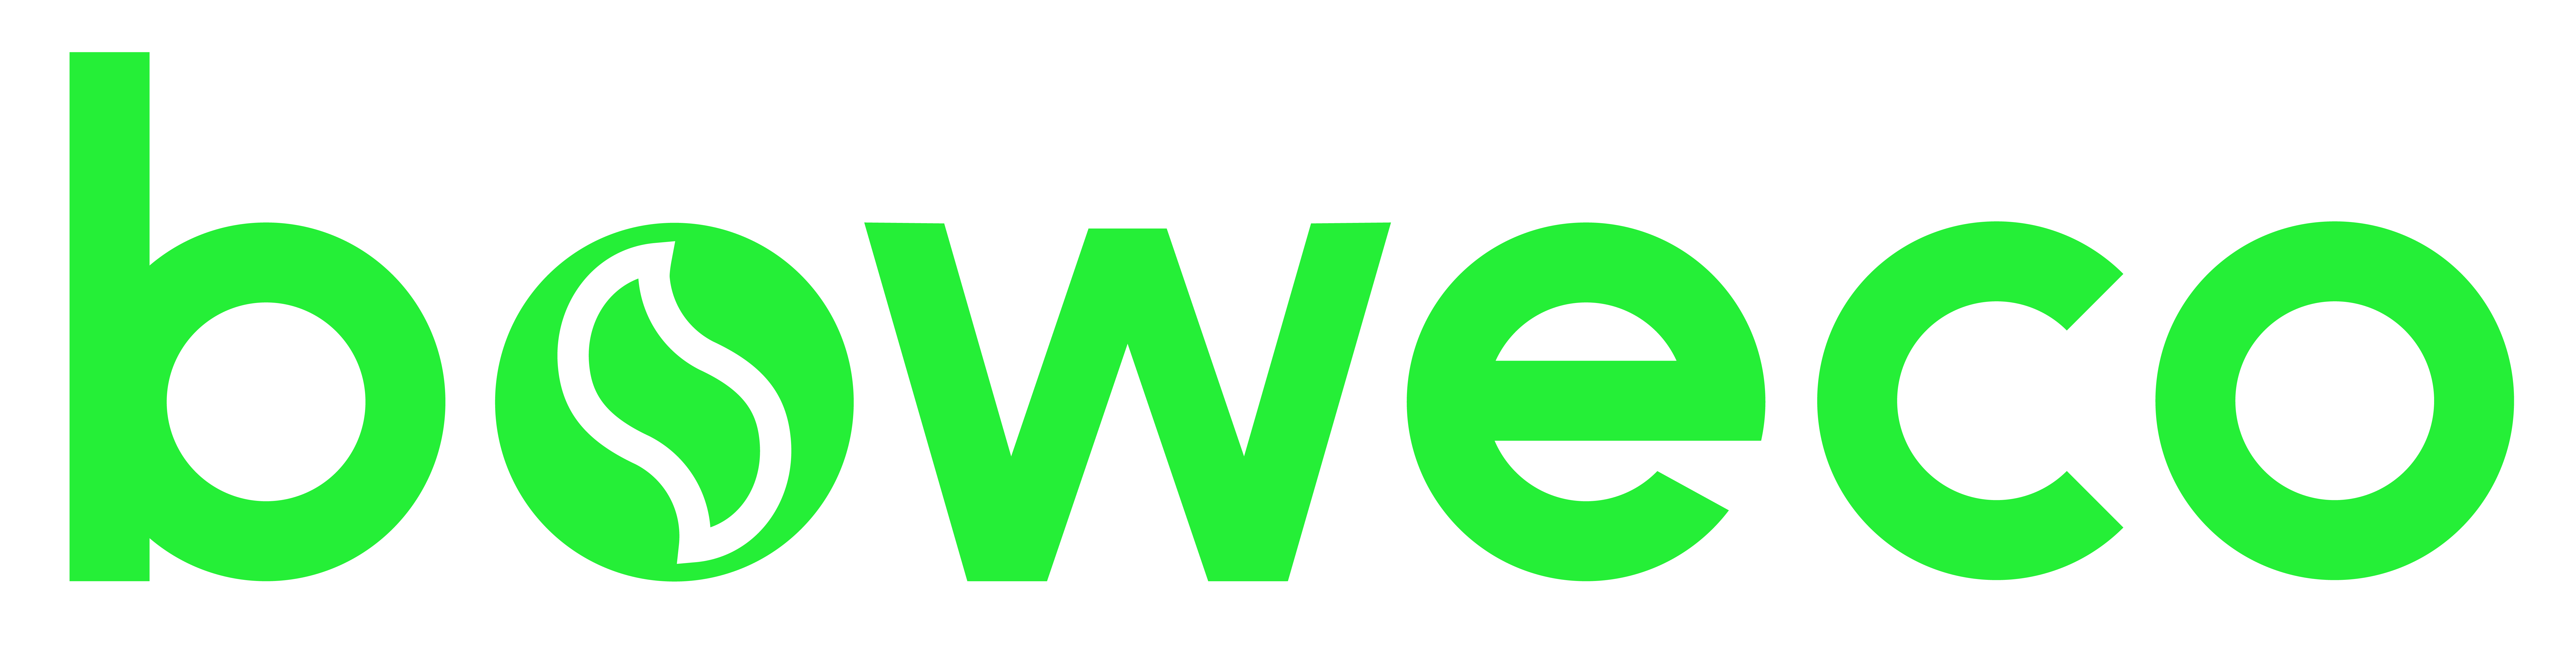 boweco-logo-large